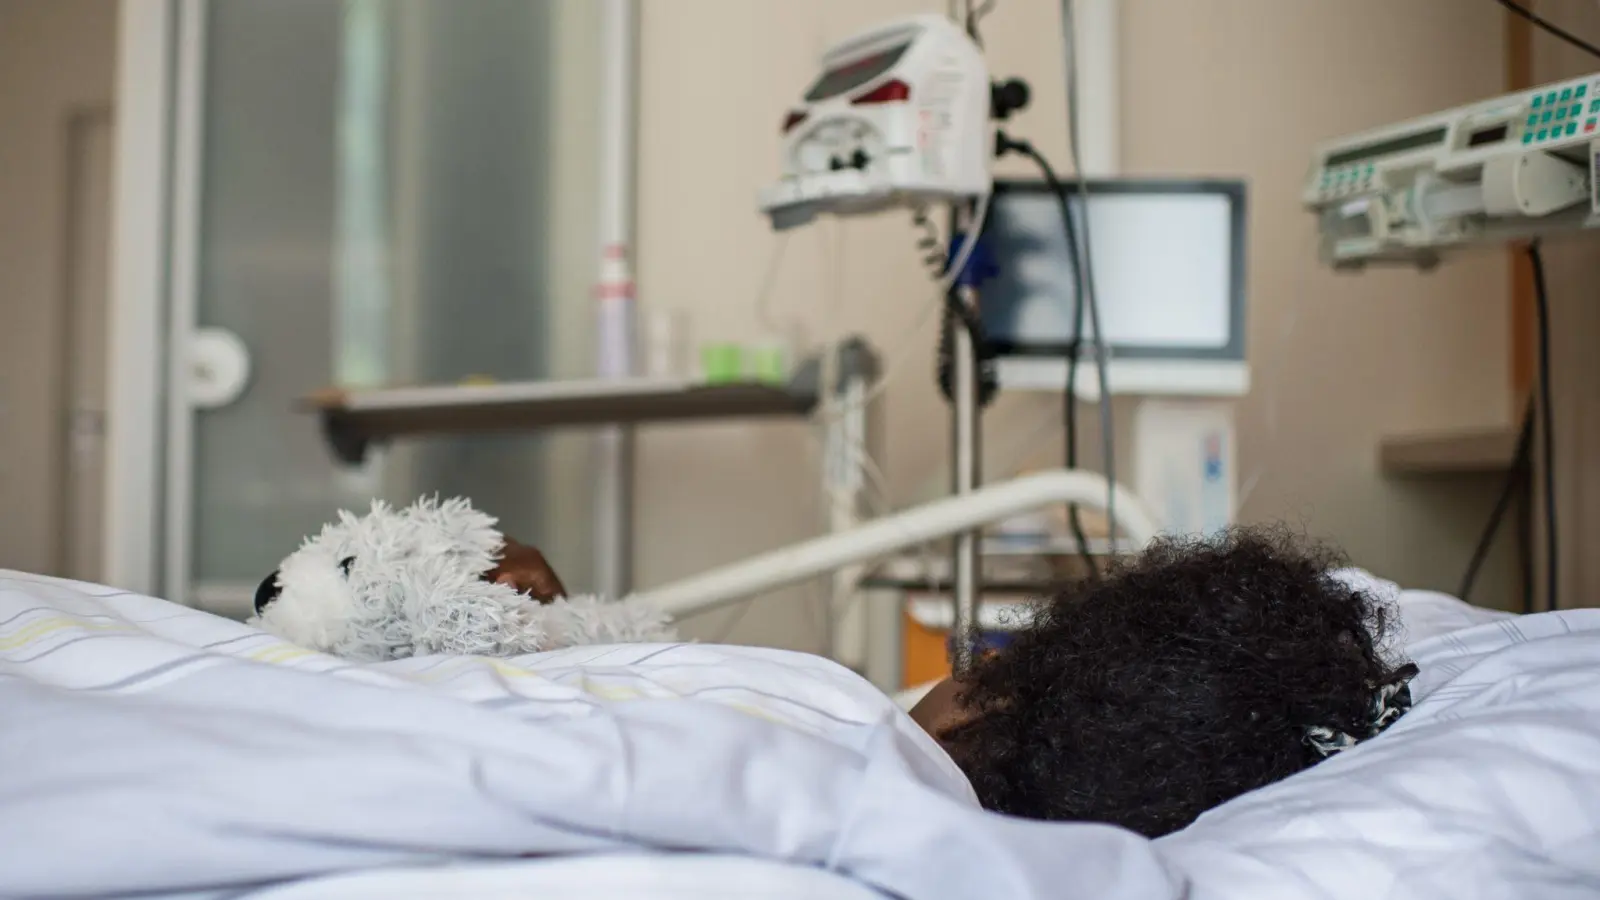 Die Patientin Deqo (Name geändert) aus Somalia im Krankenhaus: Sie kämpft mit schweren Folgen von Genitalverstümmelung, die sie als kleines Kind erlitten hat. (Foto: picture alliance / Wolfram Kastl/dpa)